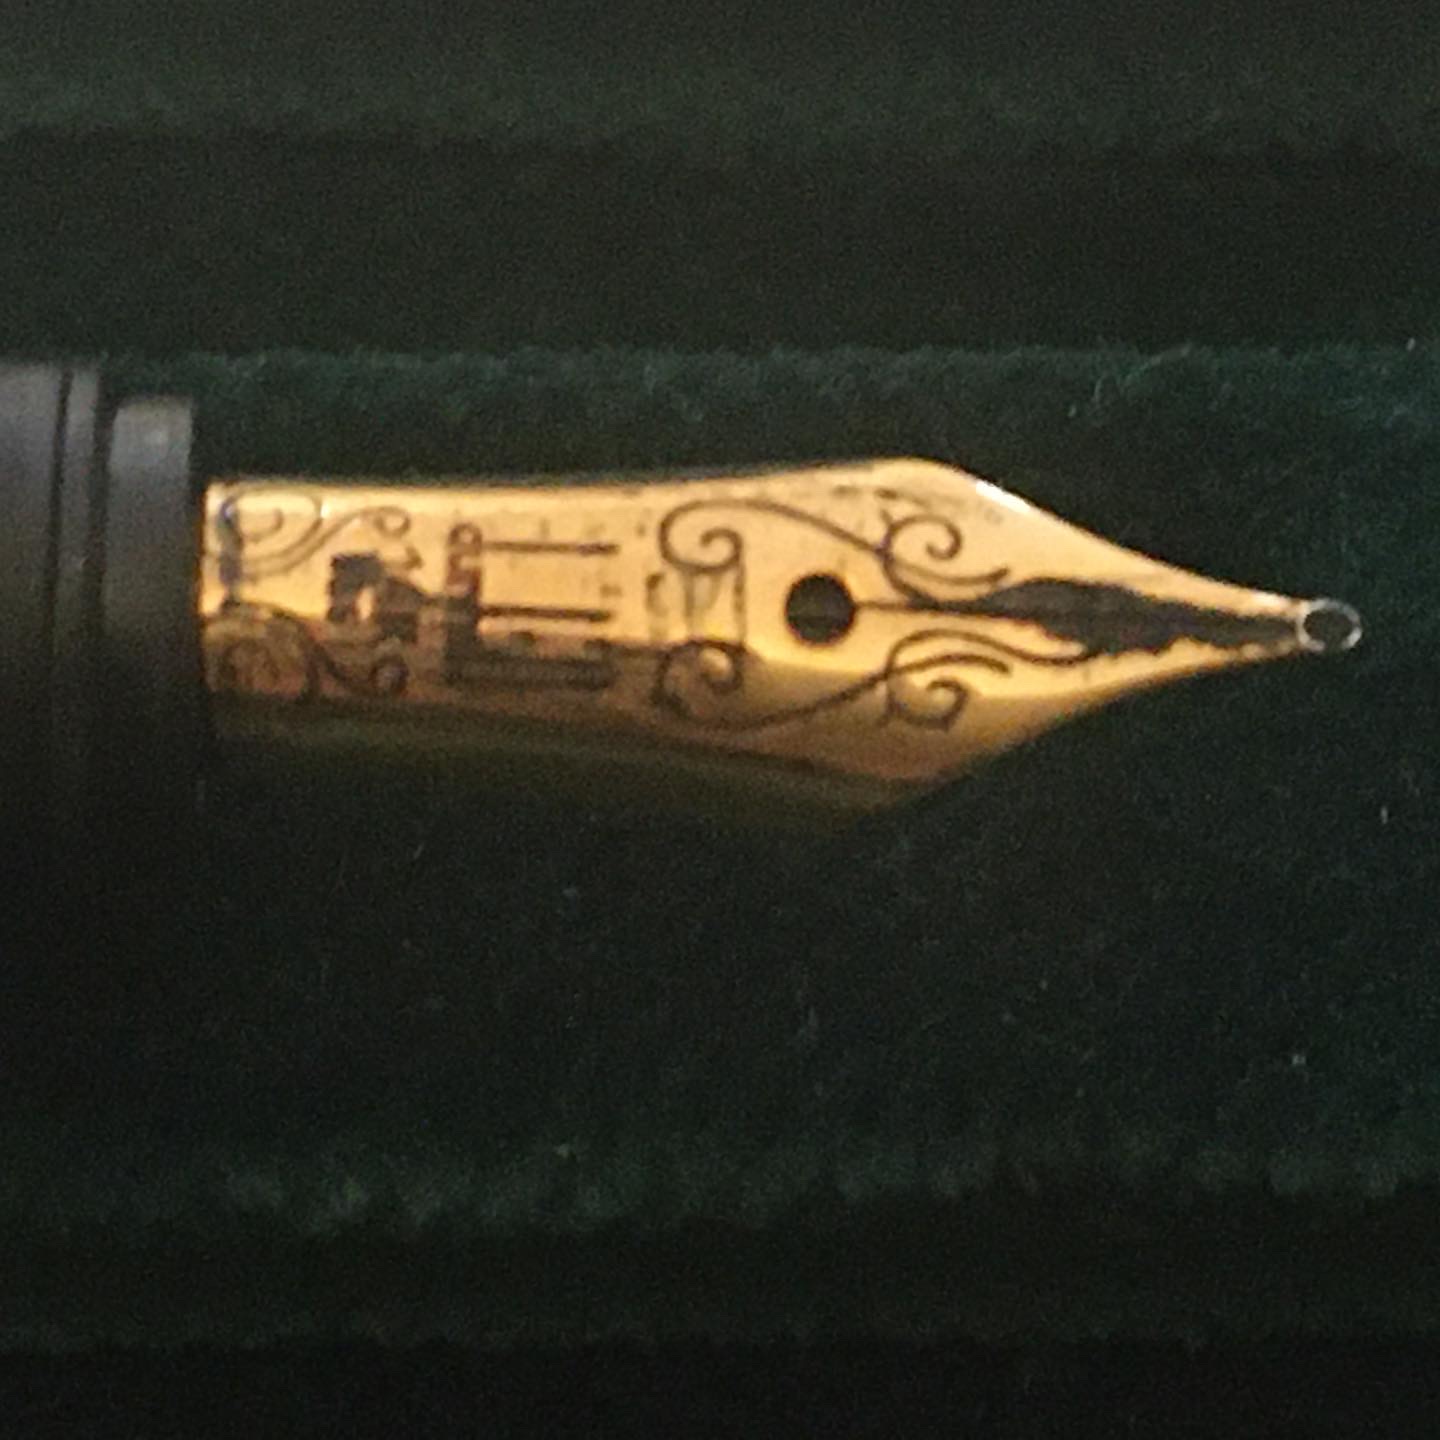 Oman Set of Dunhill Royal Presentation Sultan Qaboos Lighter Pen Cufflinks Tie Clip